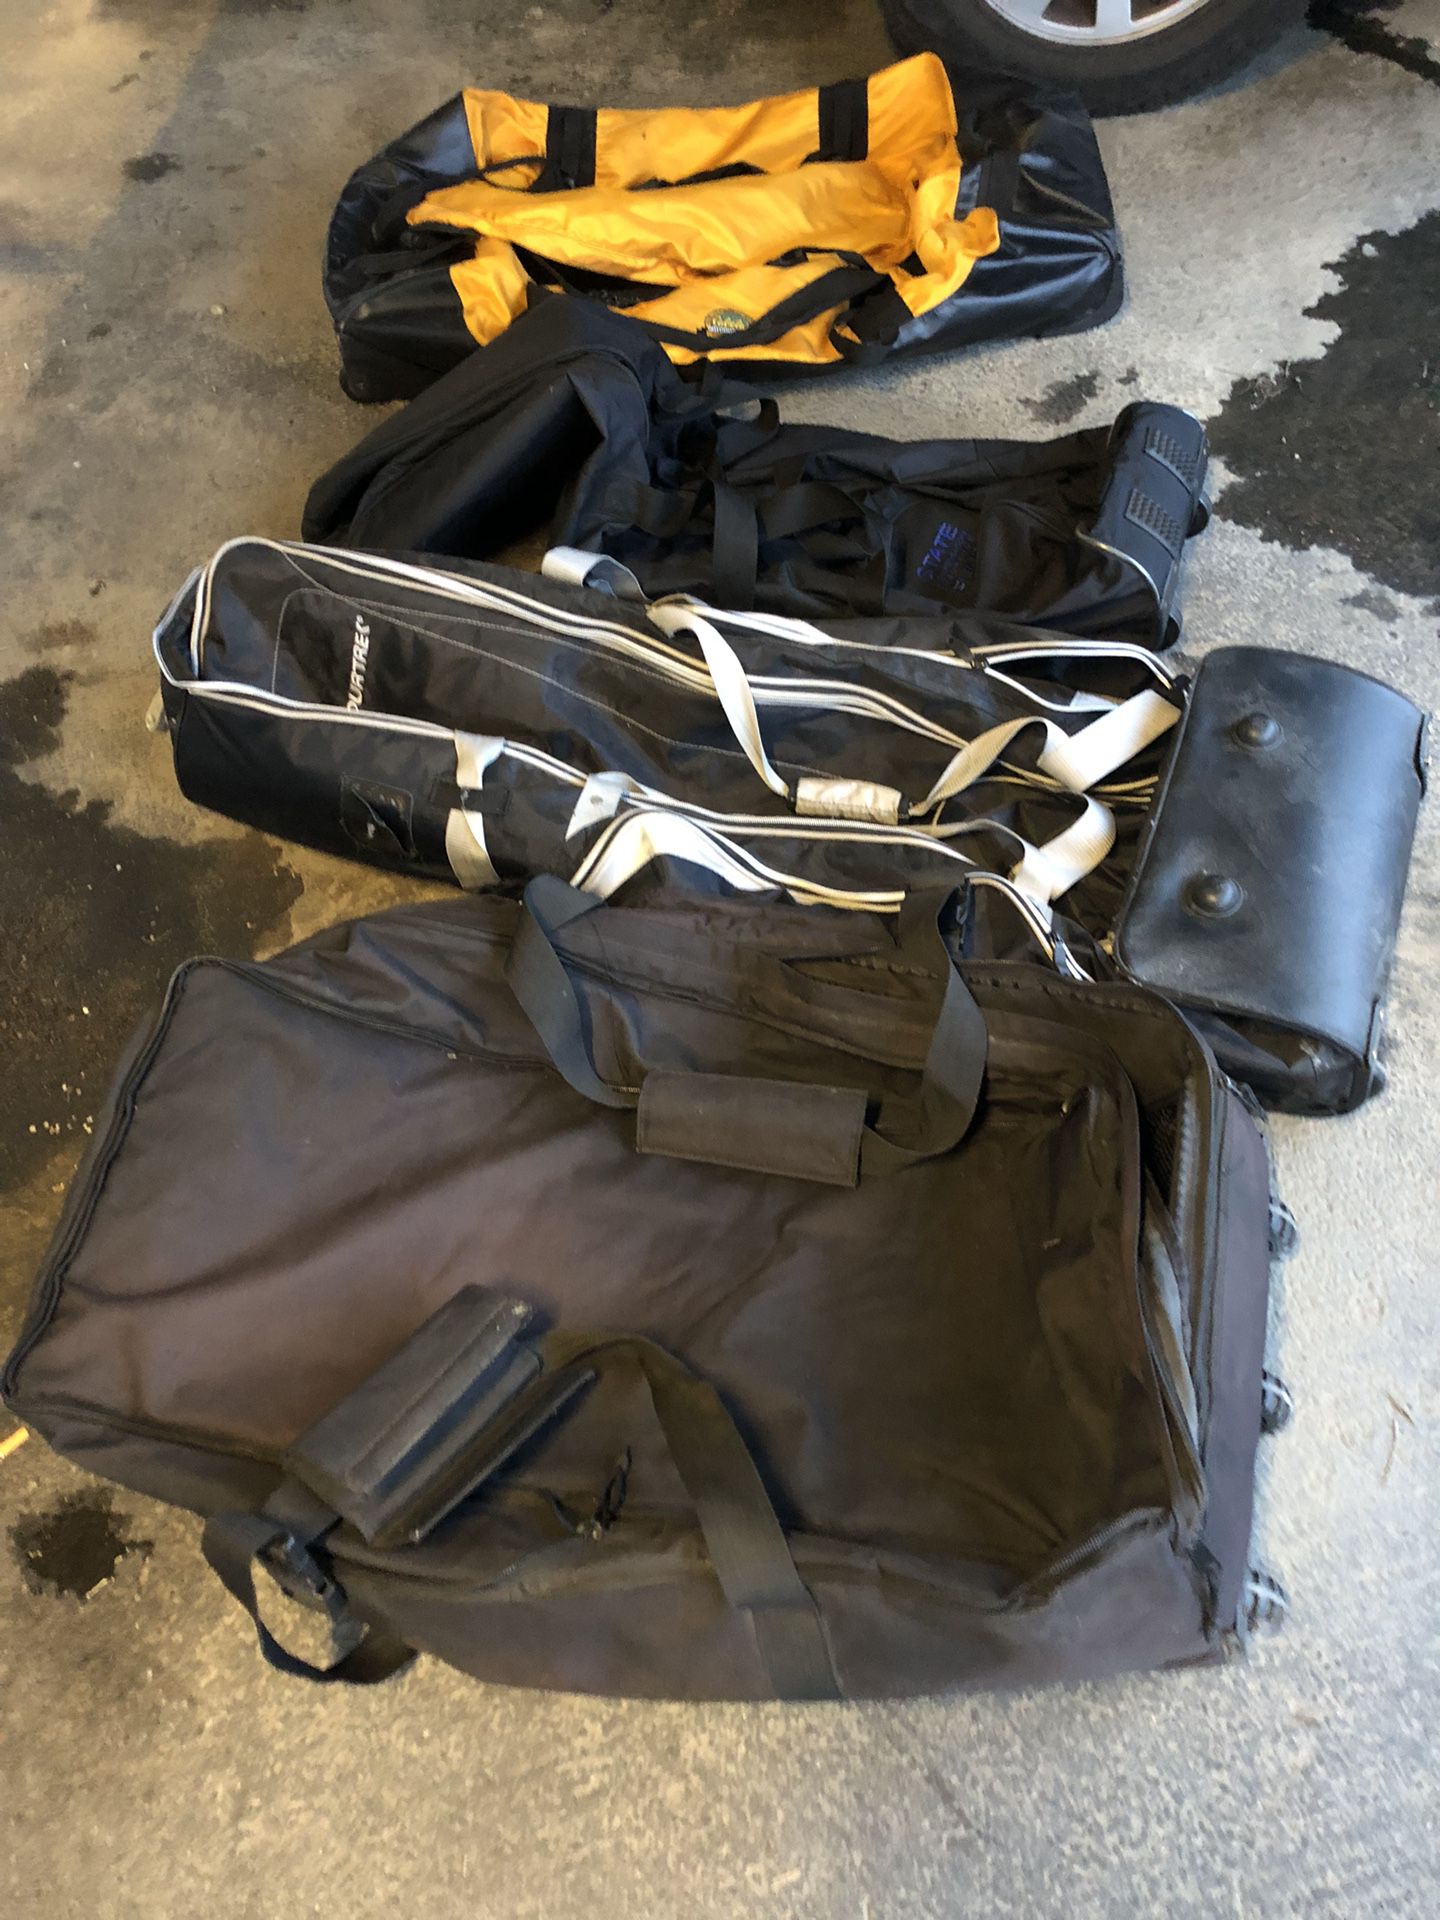 Rolling Duffle bags, Golf bags, Waterproof bags